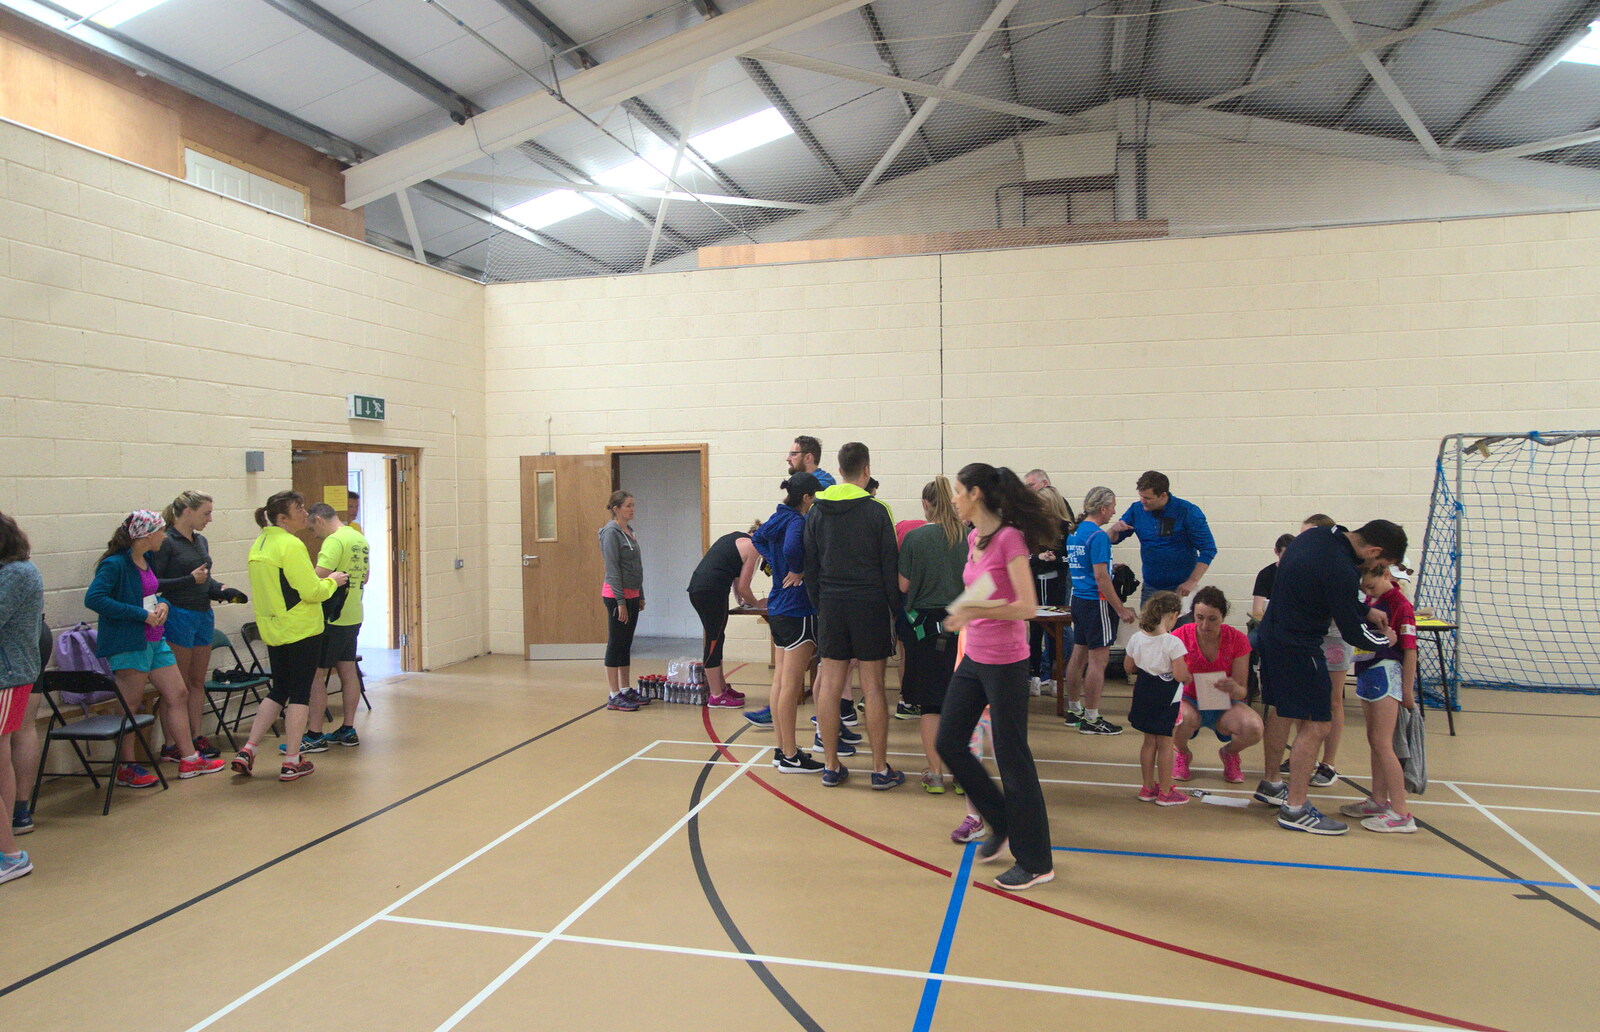 Runners in the sports hall from The Annascaul 10k Run, Abha na Scáil, Kerry, Ireland - 5th August 2017